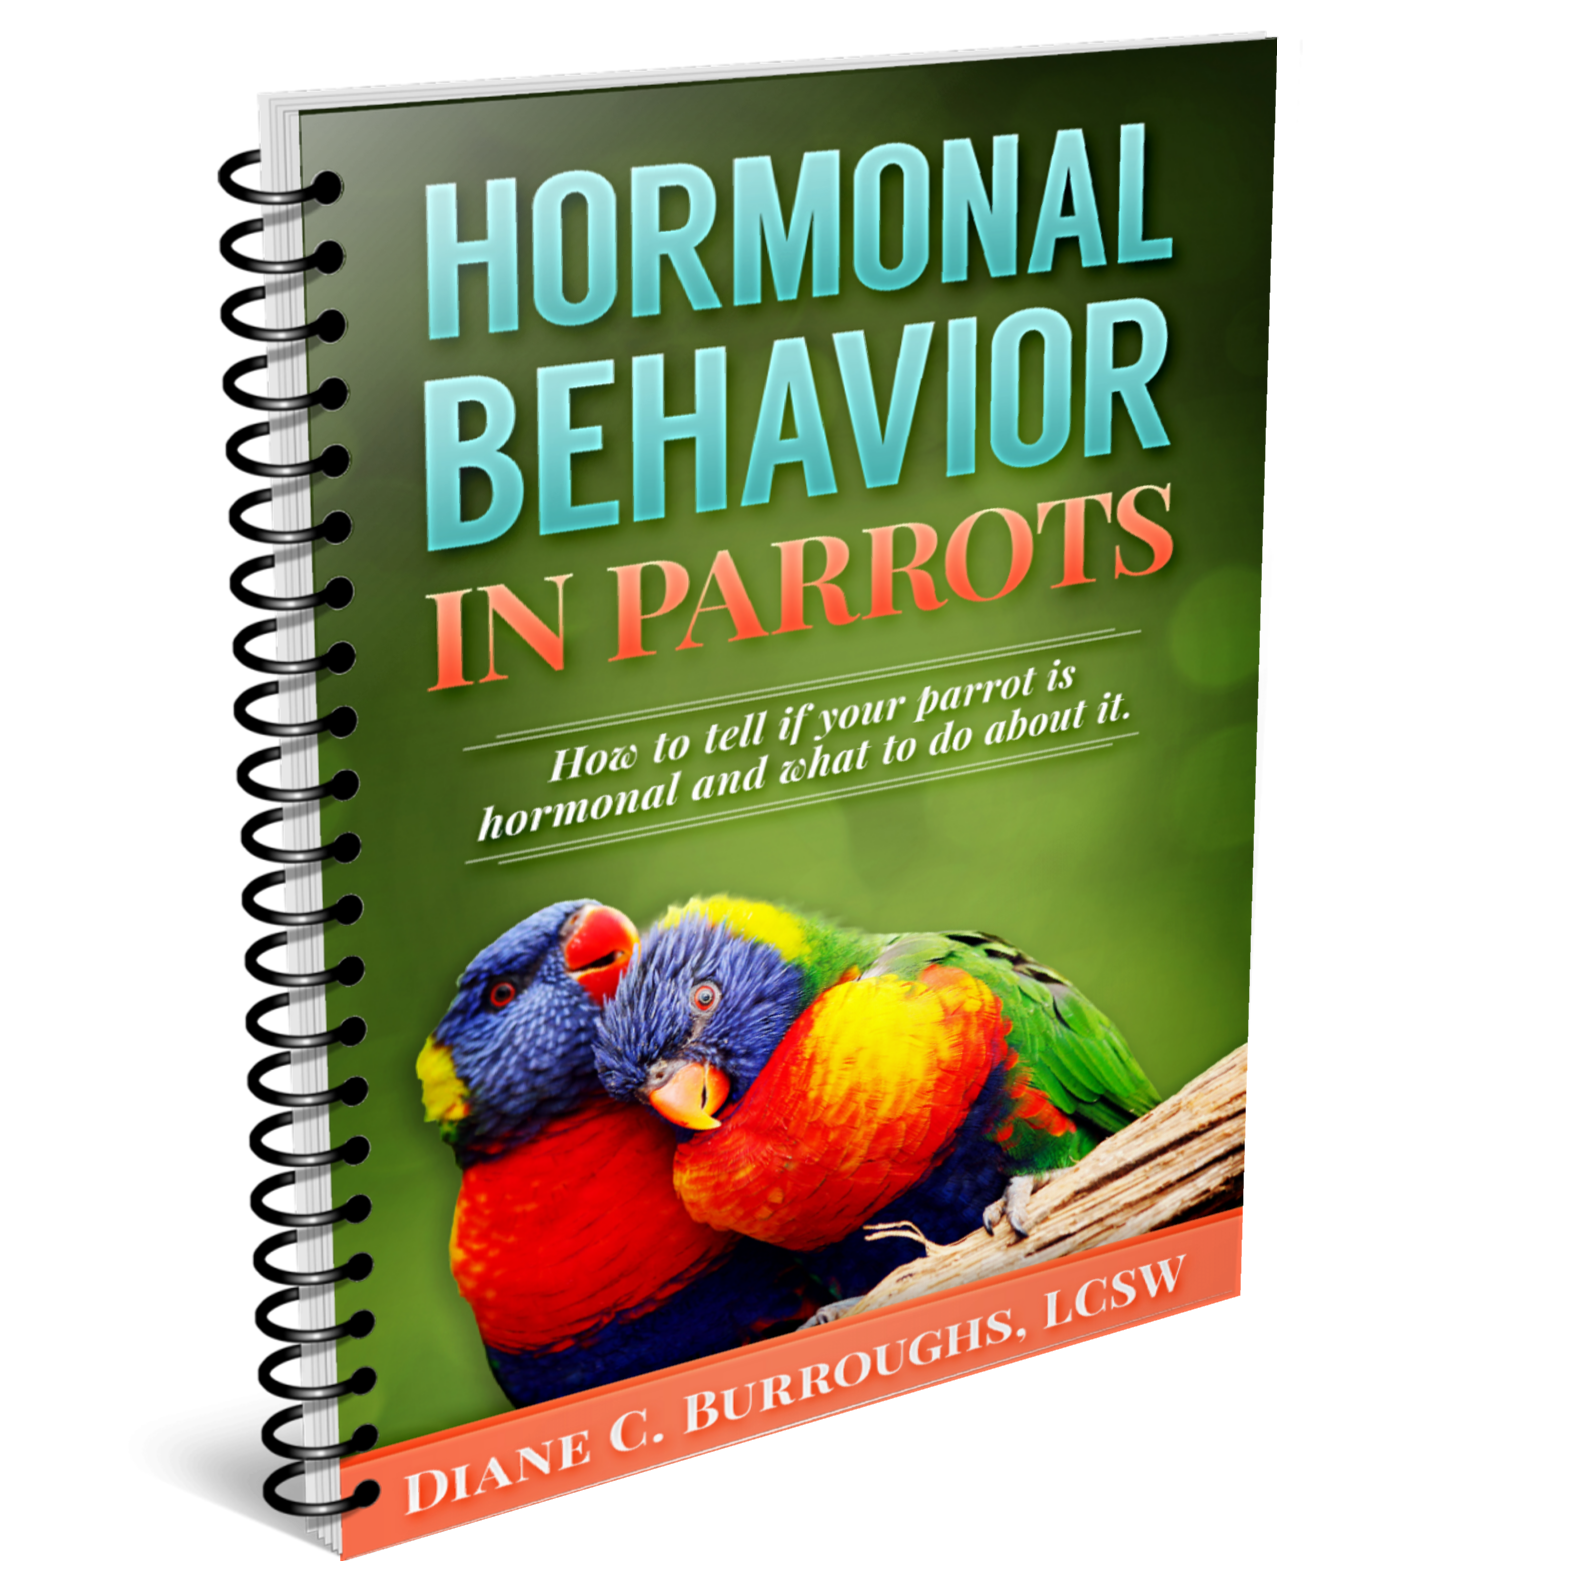 Hormonal Behavior in Parrots